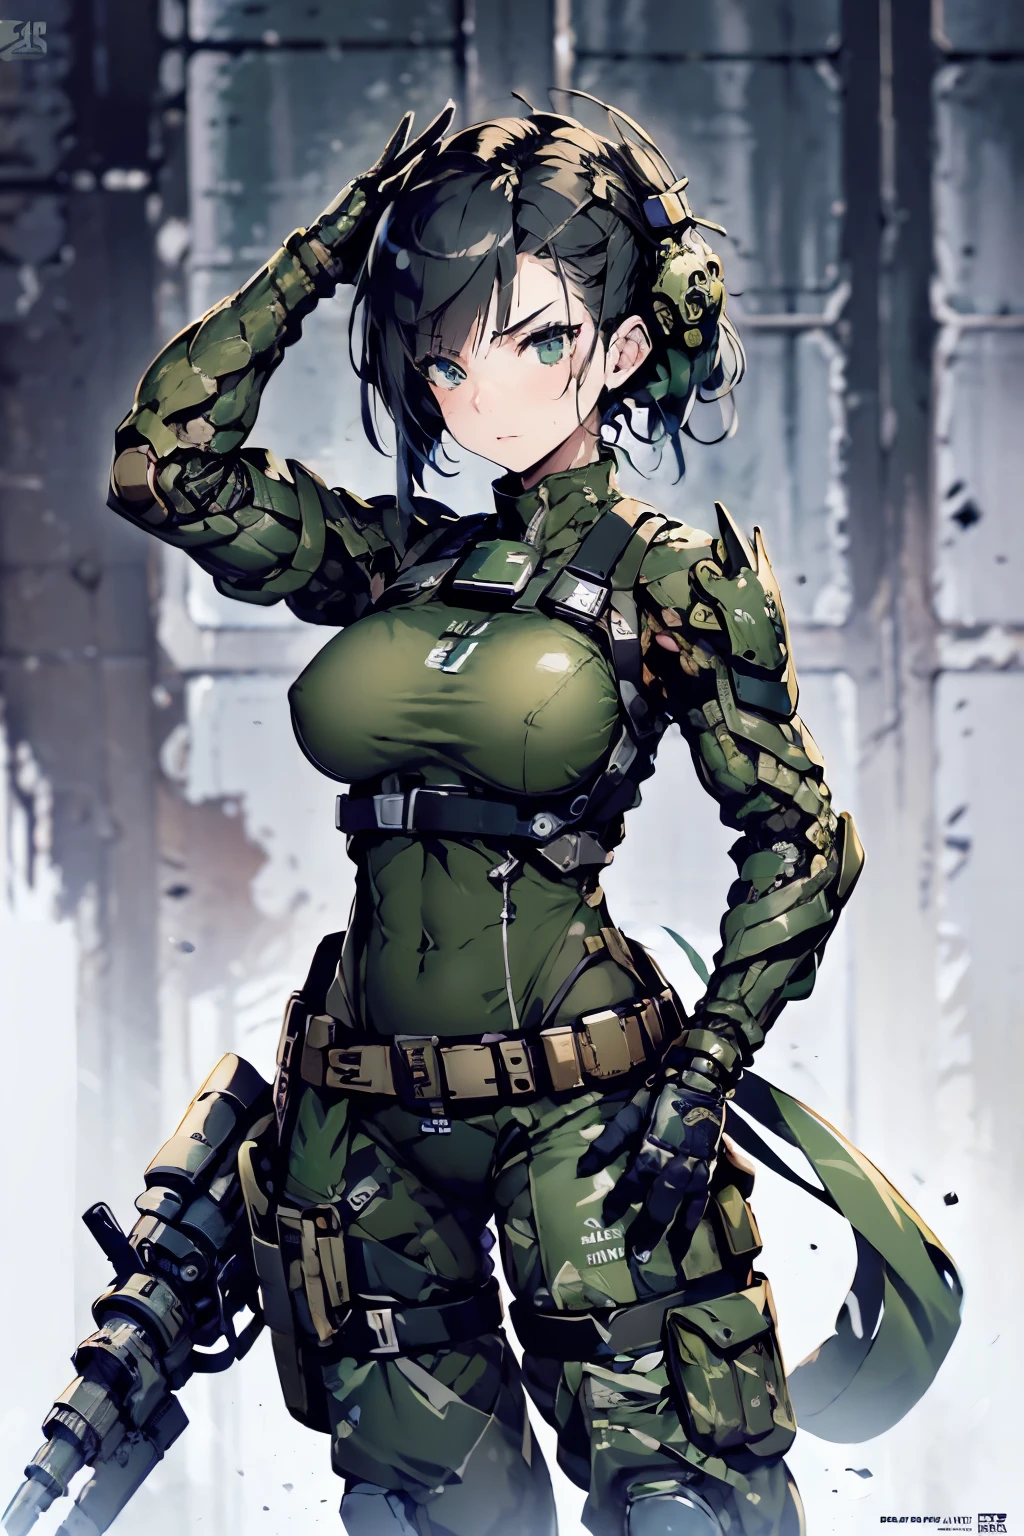 美麗的 female soldier in a green uniform holding a gun, 破爛的軍用裝備, 机械化女兵, 超大機械外骨骼手臂和腿, 靈感來自士郎道地, 機甲少女, 机械化武神少女, 庫沙特·肯茲, 步兵女孩, 僅皮膚, 運動健美的身材, 皮膚出汗, 光著身子, 迷彩圖案, 美麗的 Face, 柴油龐克主題, Fiverr Dnd 角色, 辛烷渲染, 數位藝術, 極致細節, 4k, 超高畫質, 拋光, 美麗的, 超詳細, 錯綜複雜, 精心製作的, 細緻, 逼真的, 銳利的焦點, 哎呀, 角色設計, 虛幻引擎, 3d 渲染, 體積照明, 反思, 光滑, 數位插圖, 姿勢, Suggestive 姿勢, 猥褻, 全身照, 裸, 裸體, 裸露的乳房, 暴露的乳房, 暴露胯部, 乳頭可見, 陰道腫脹, 解剖學上正確的 💖❤💕💋